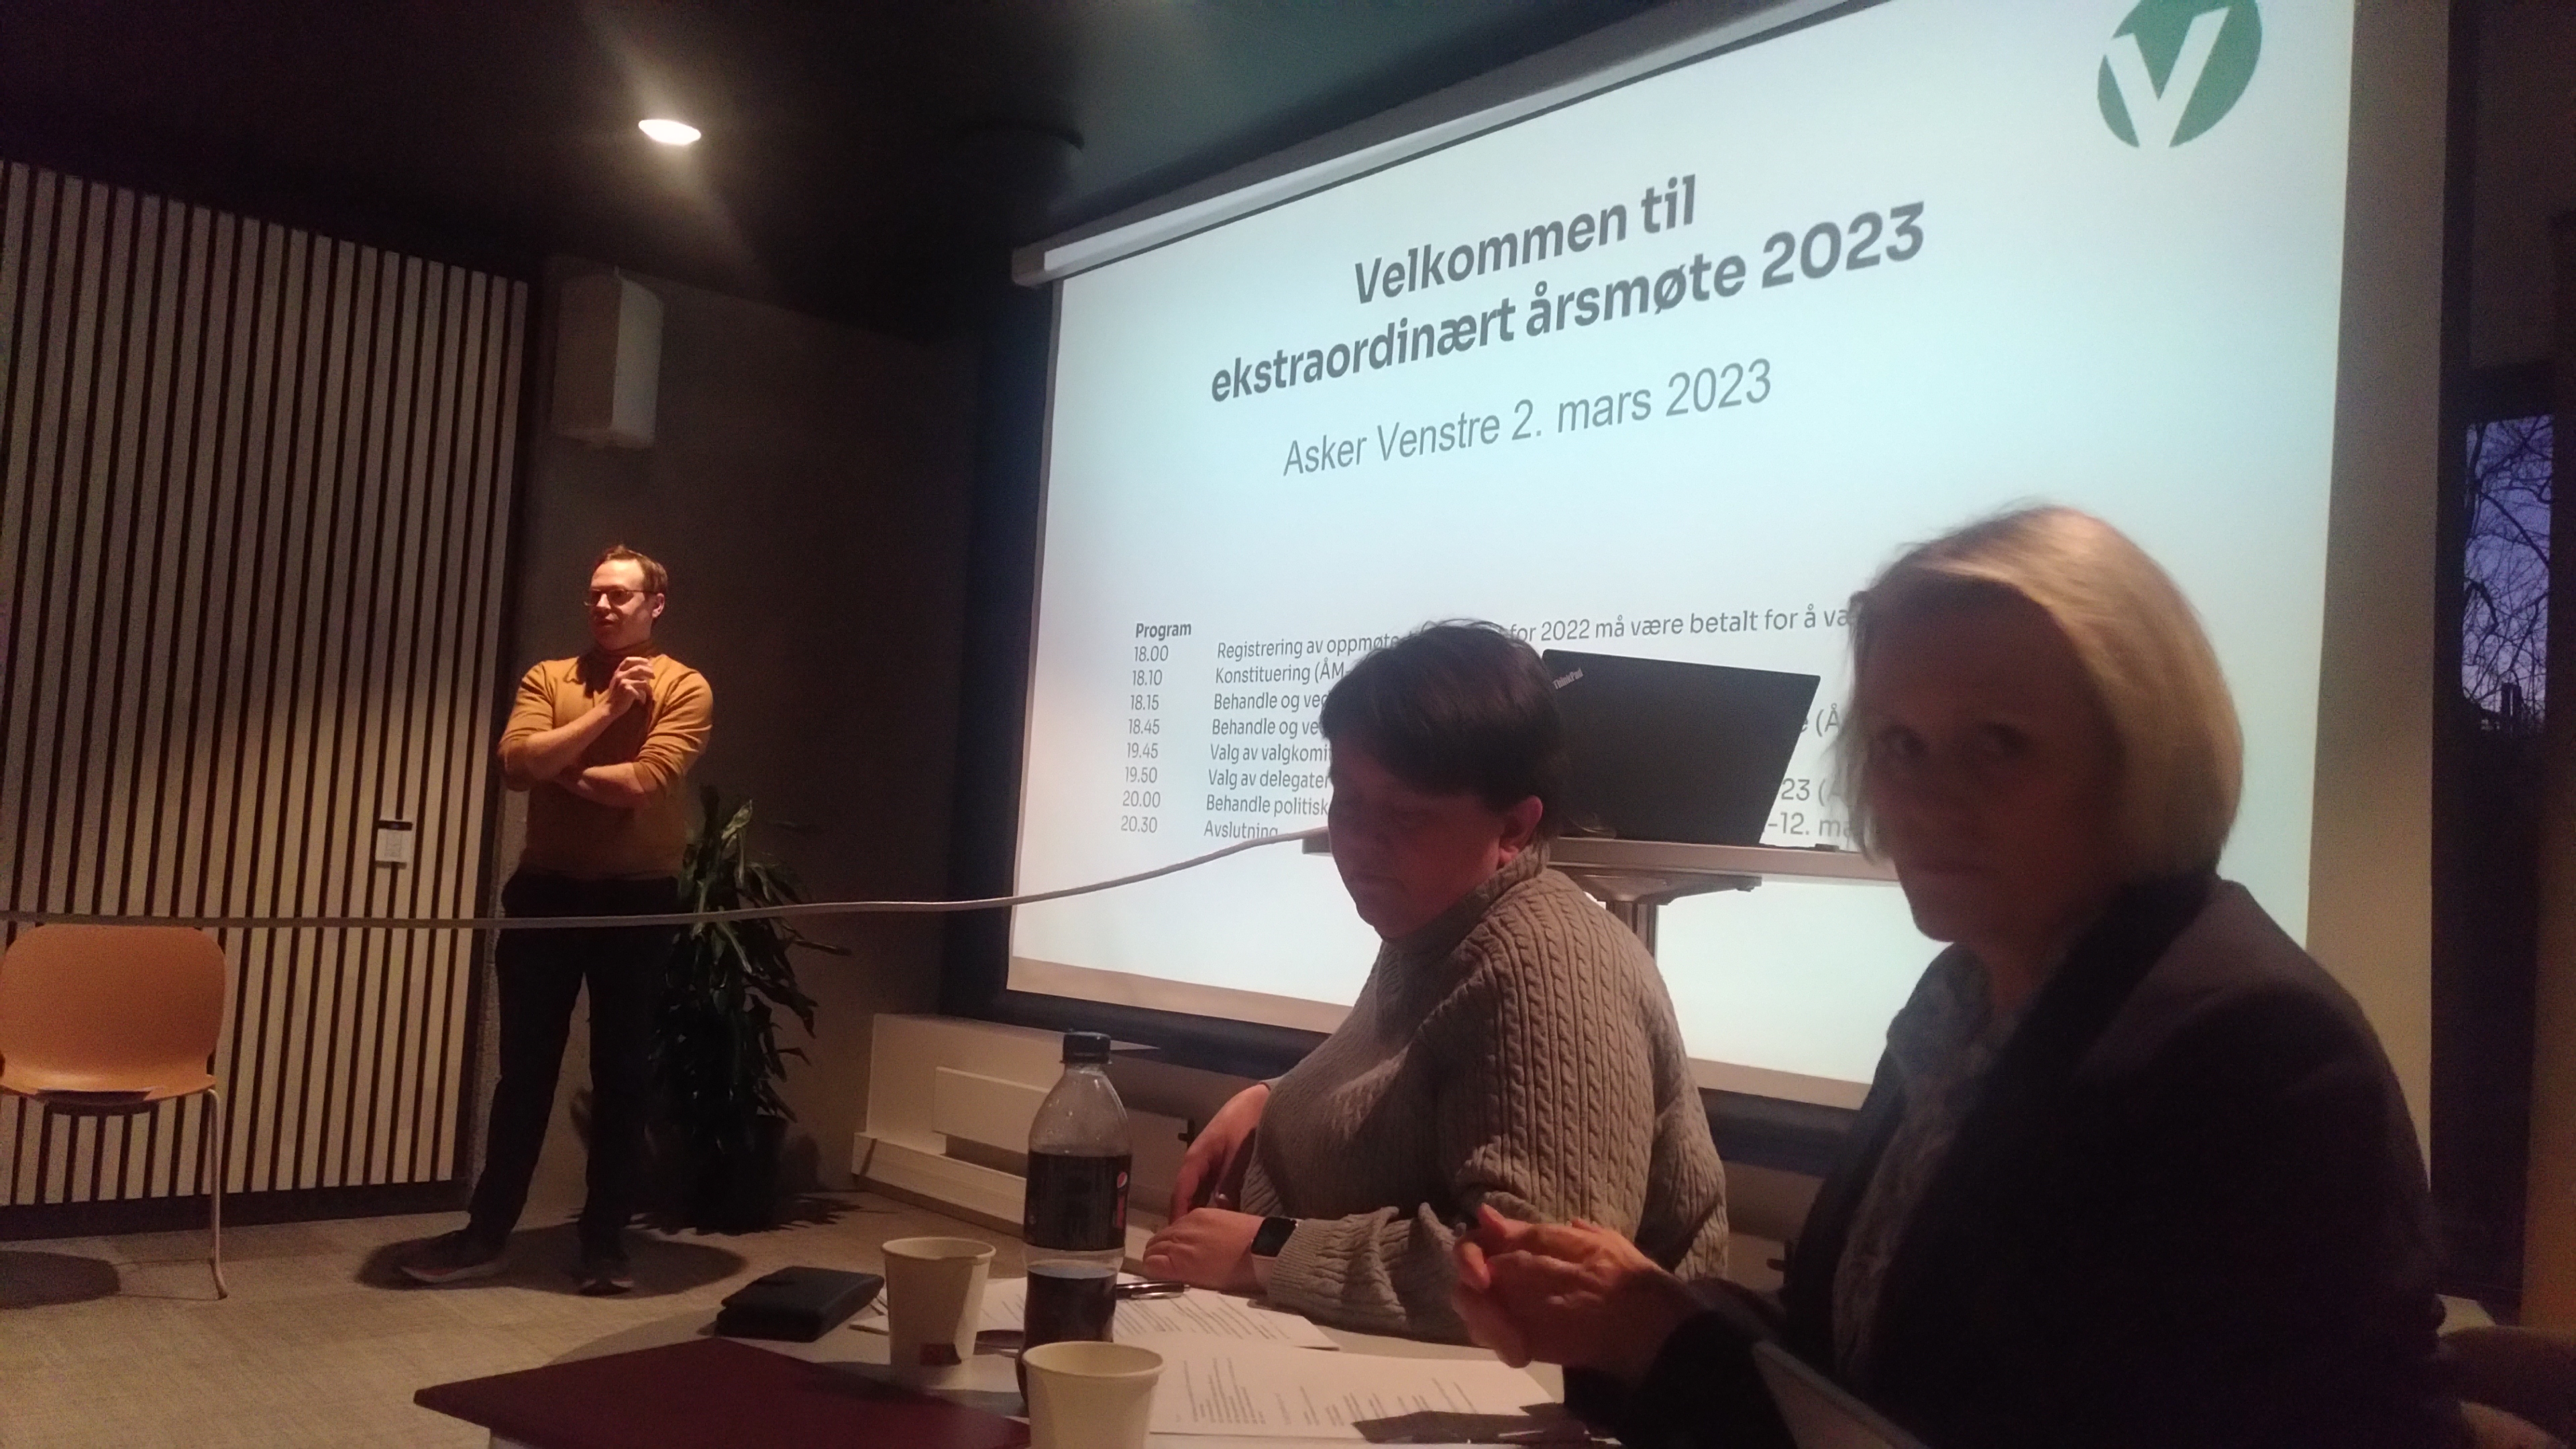 Leder i Asker Venstre, Audun Aas ønsket velkommen til ekstraordinært årsmøte mars 2023